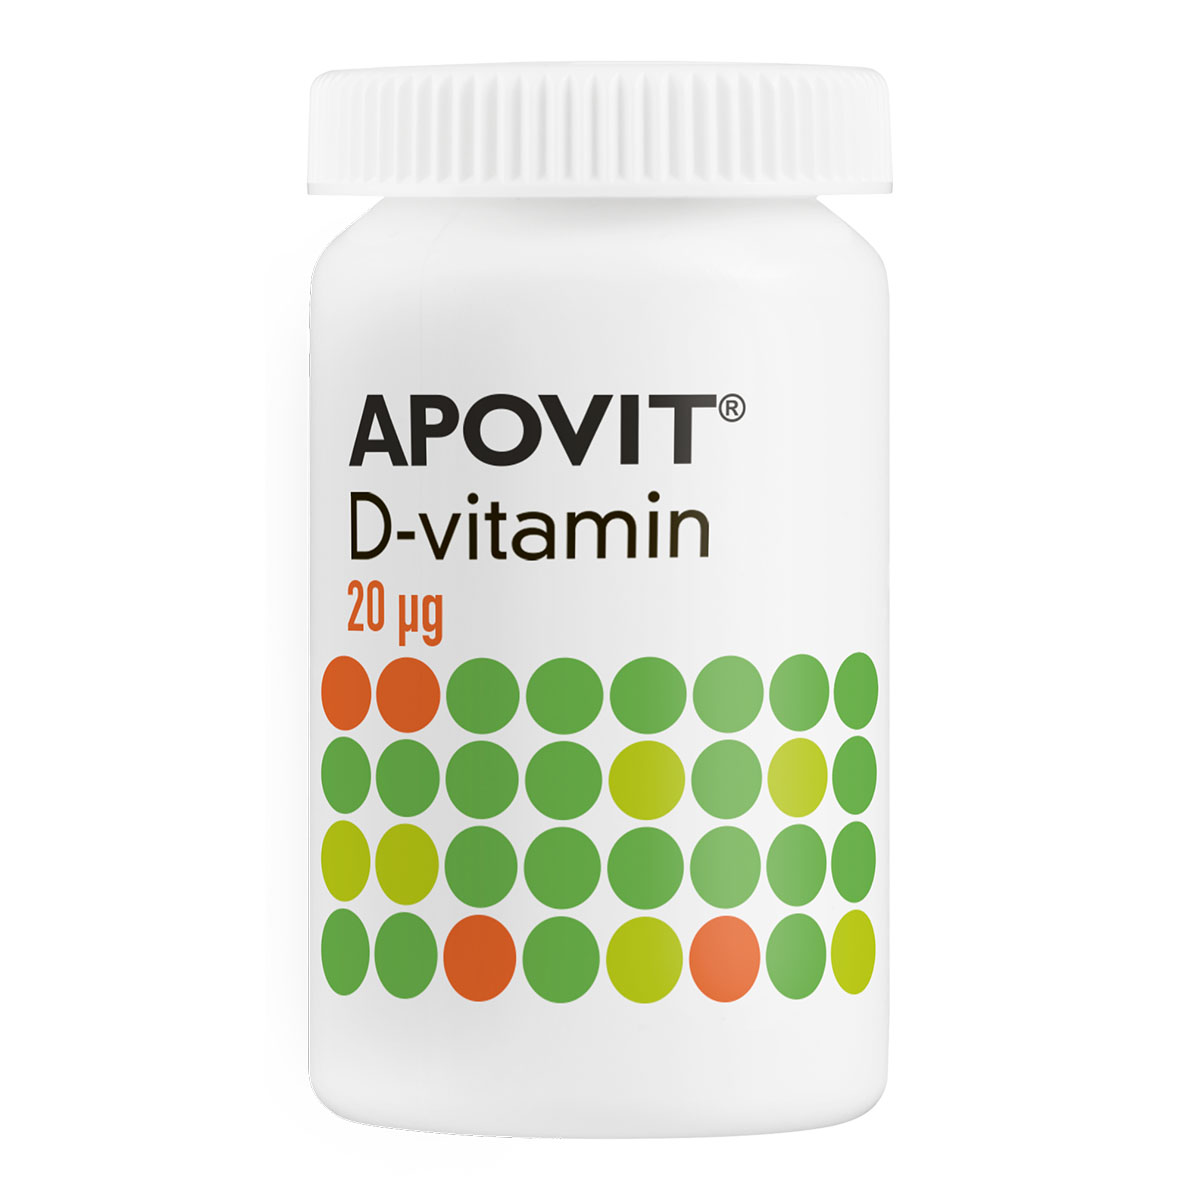 D-vitamin 20 µg